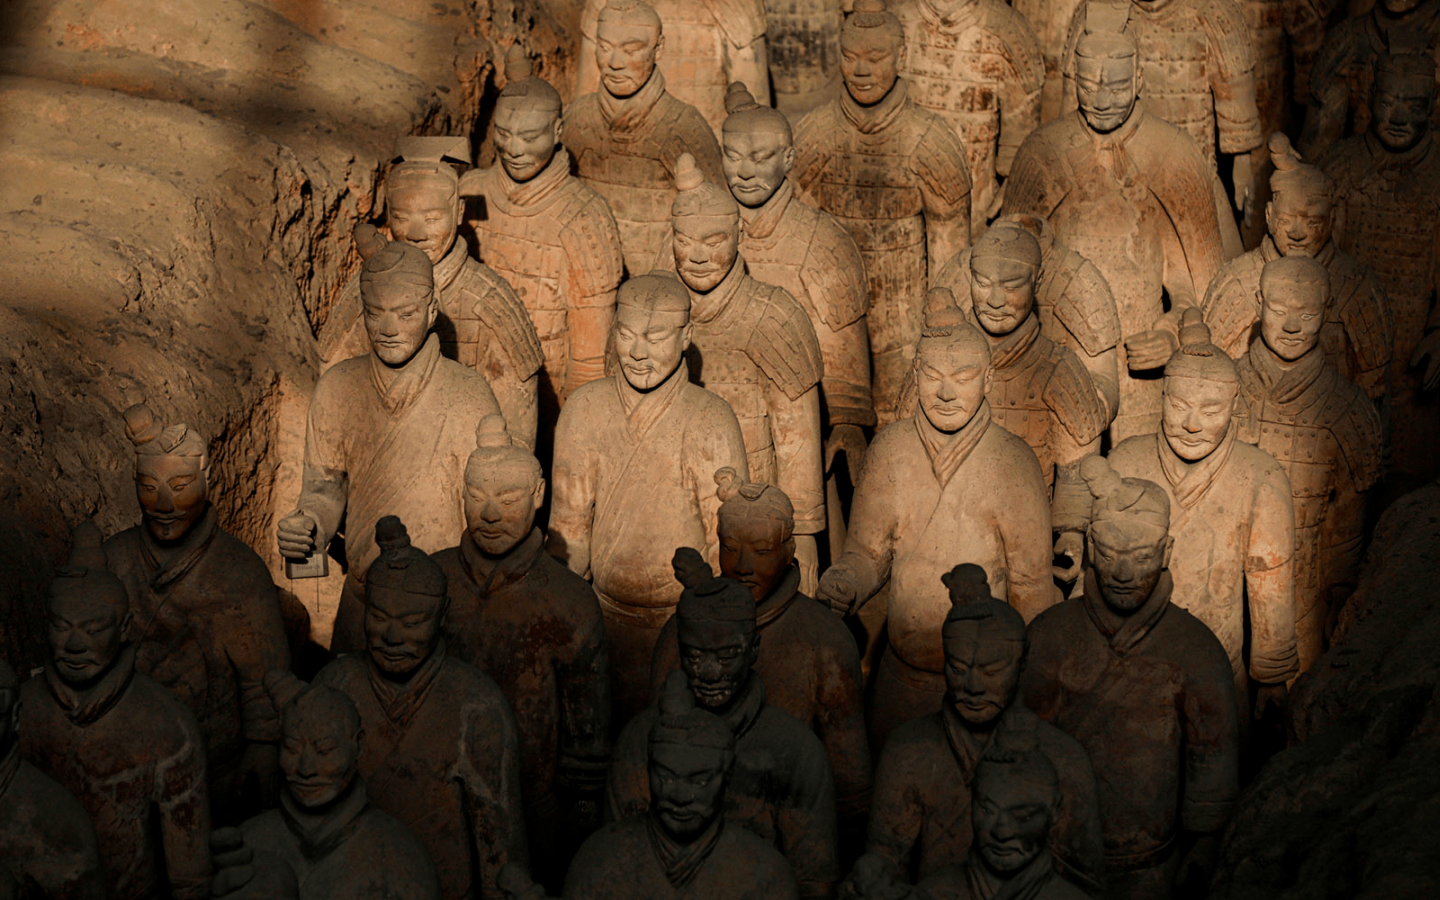 Trung Quốc: Tây An đối mặt với 'sự trỗi dậy của những lăng mộ' và bài toán hóc búa trong việc bảo vệ di tích lịch sử